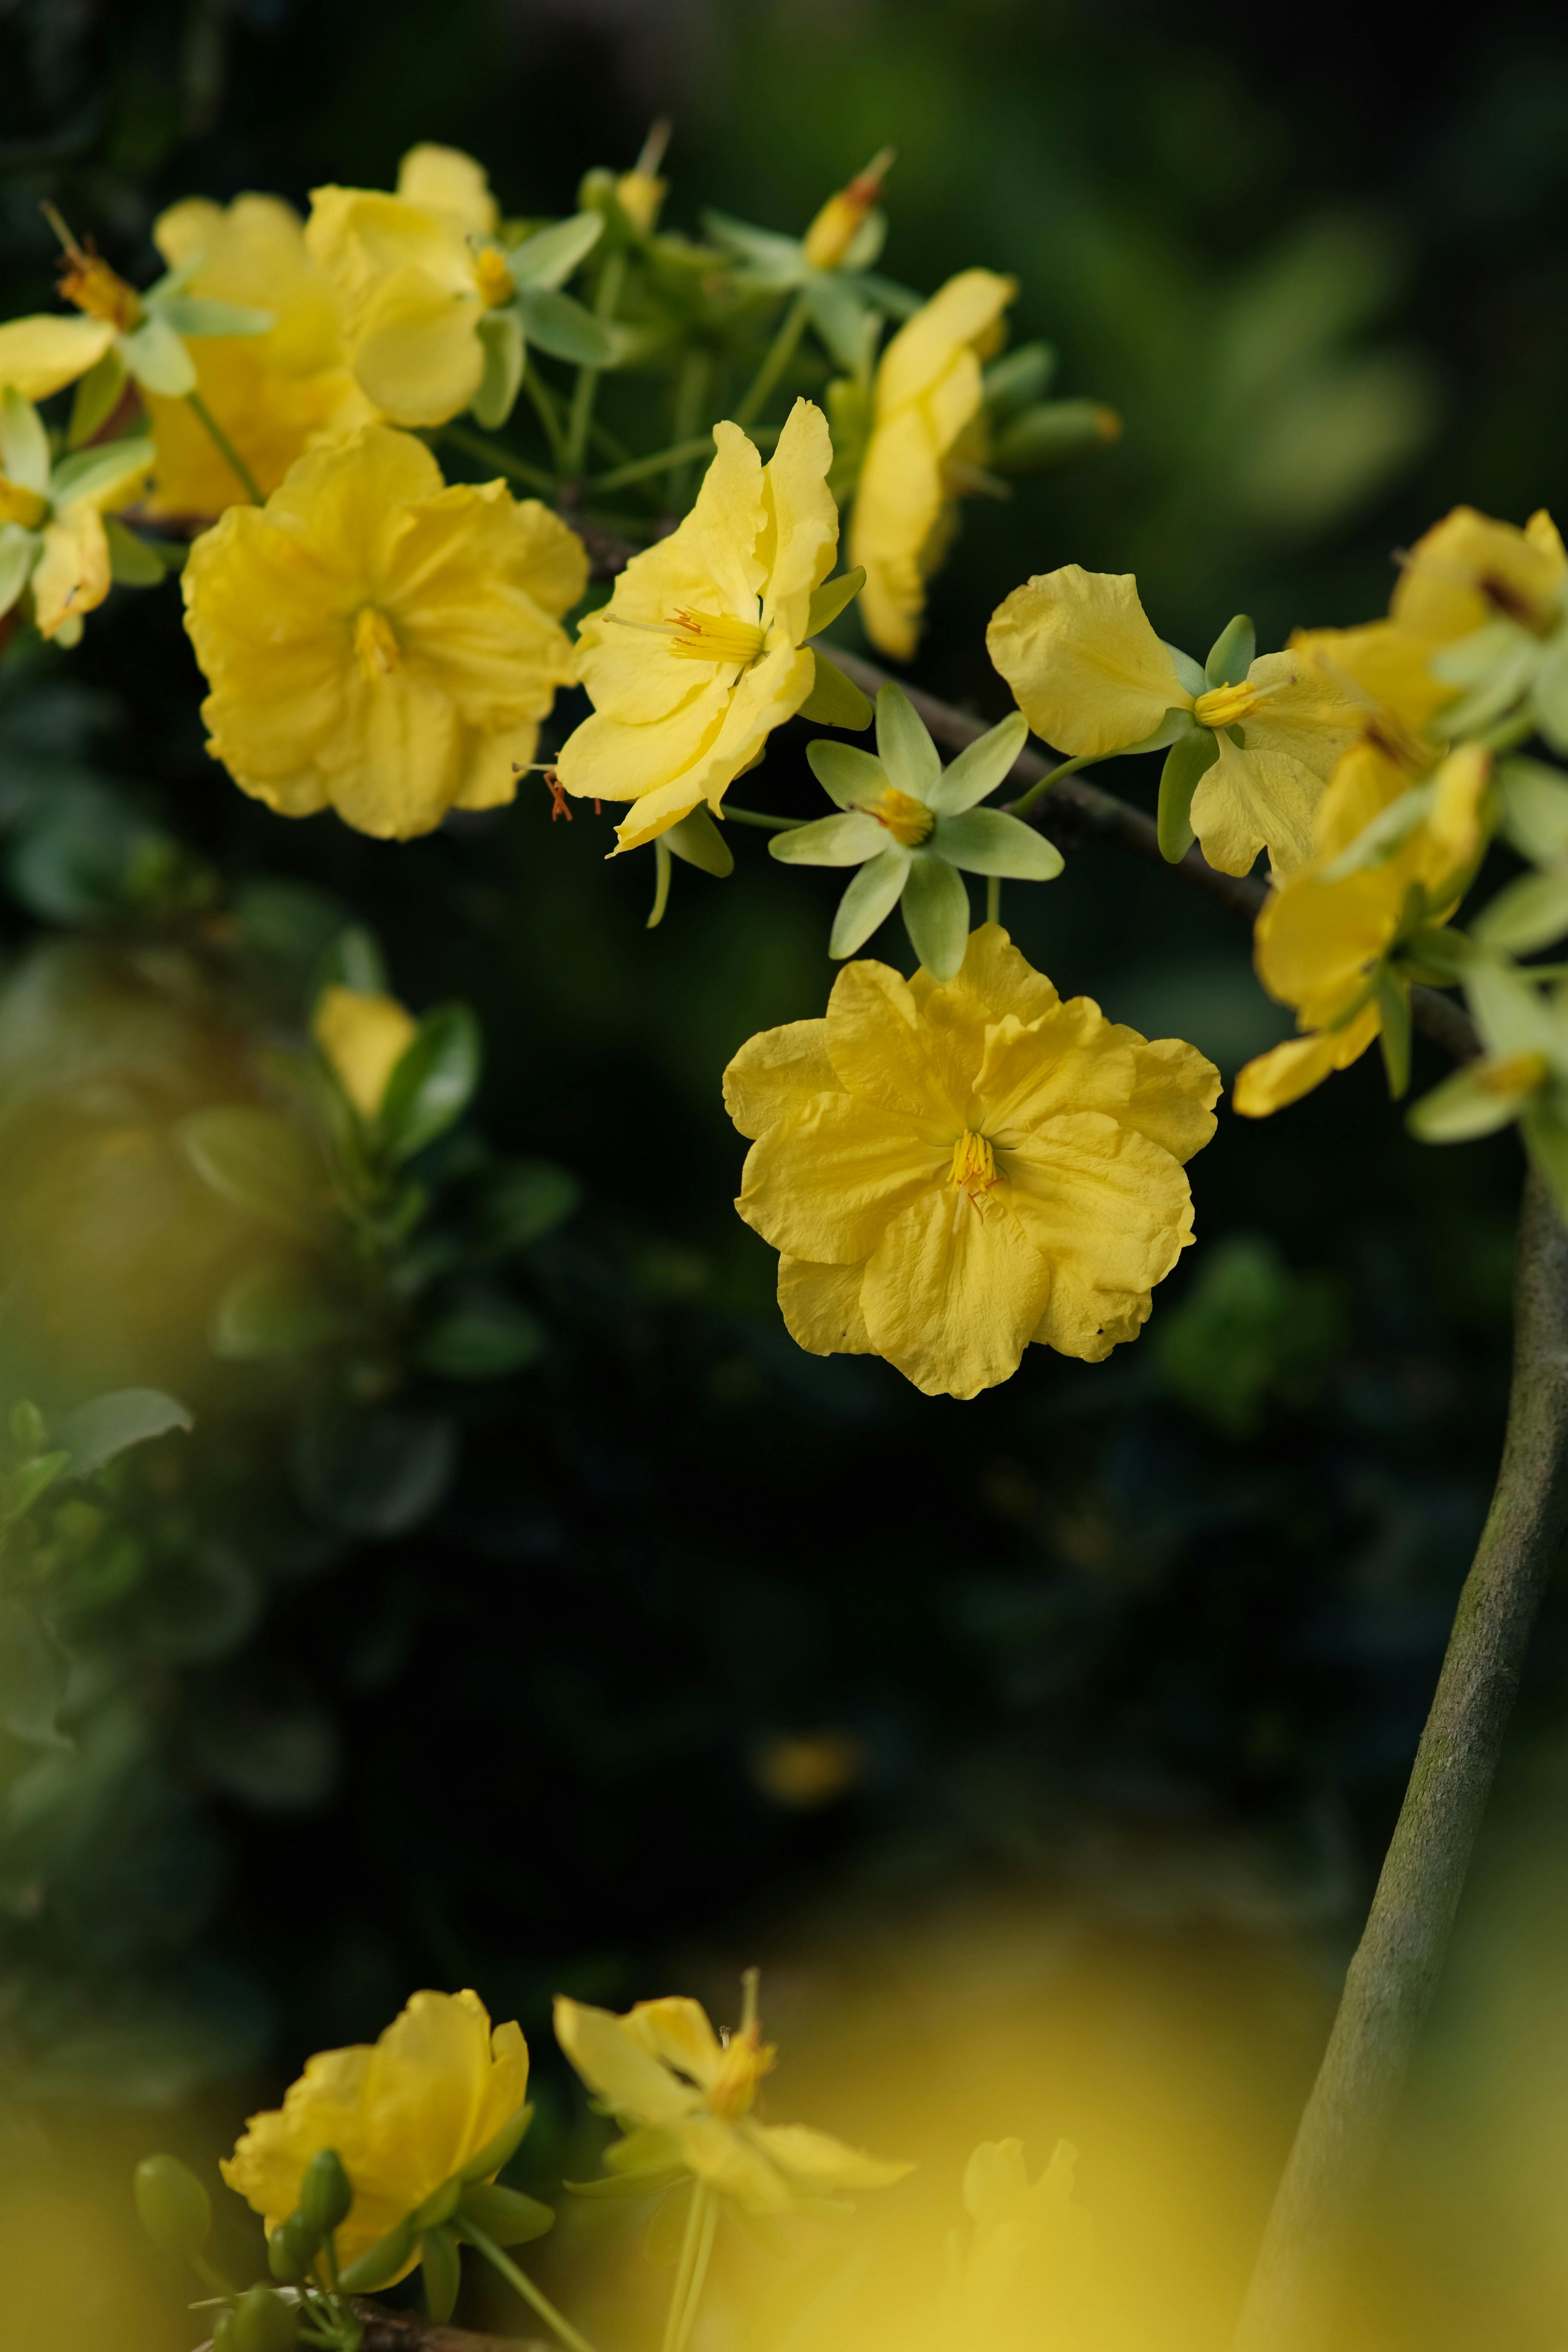 Hãy chiêm ngưỡng những đóa hoa vàng nhỏ tuyệt đẹp trong bức ảnh này. Hương thơm và màu sắc tươi tắn sẽ khiến bạn cảm thấy thật yên bình và thư thái.